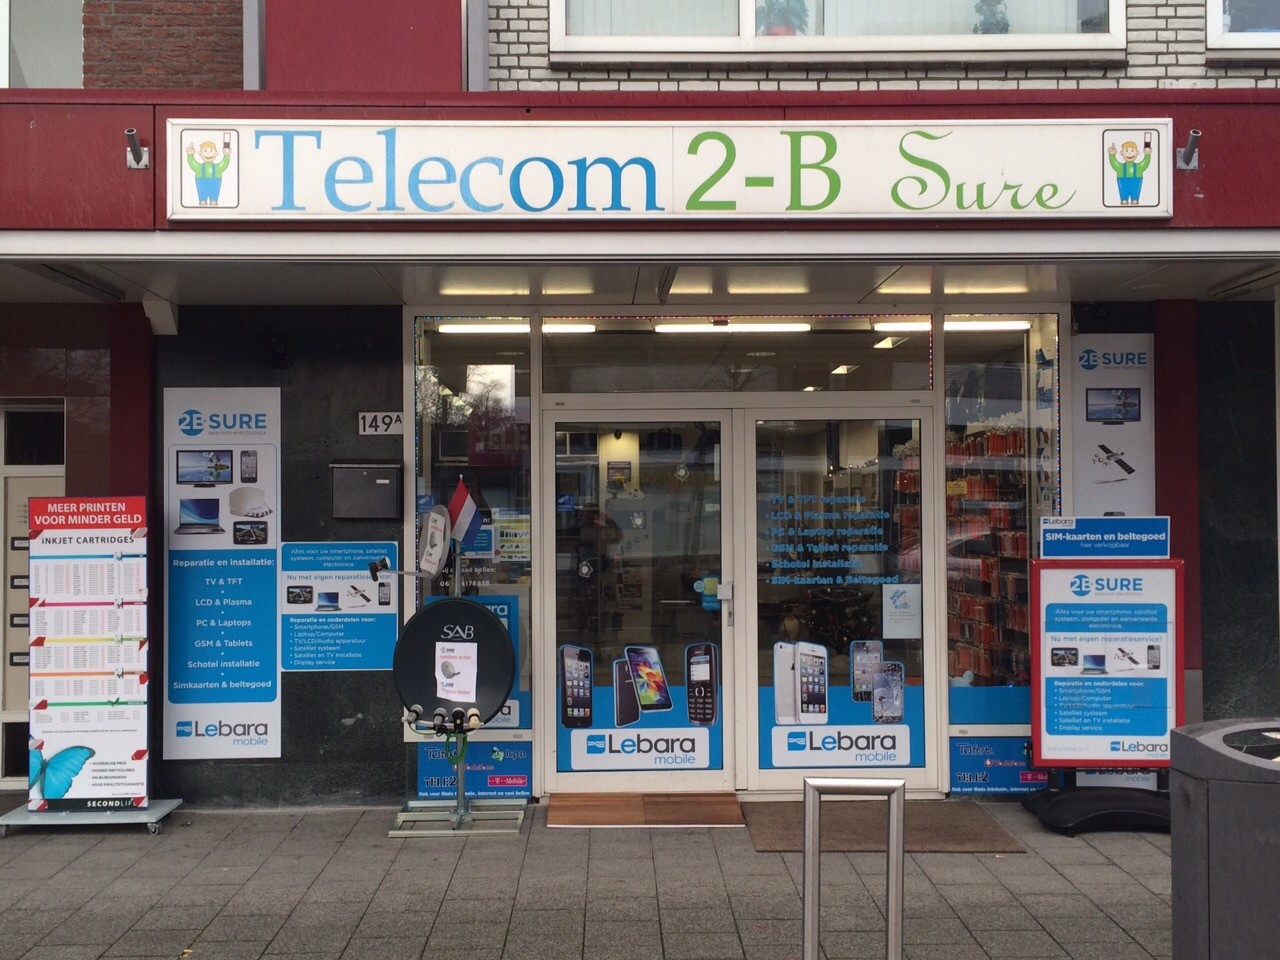 Telecom 2-B sure